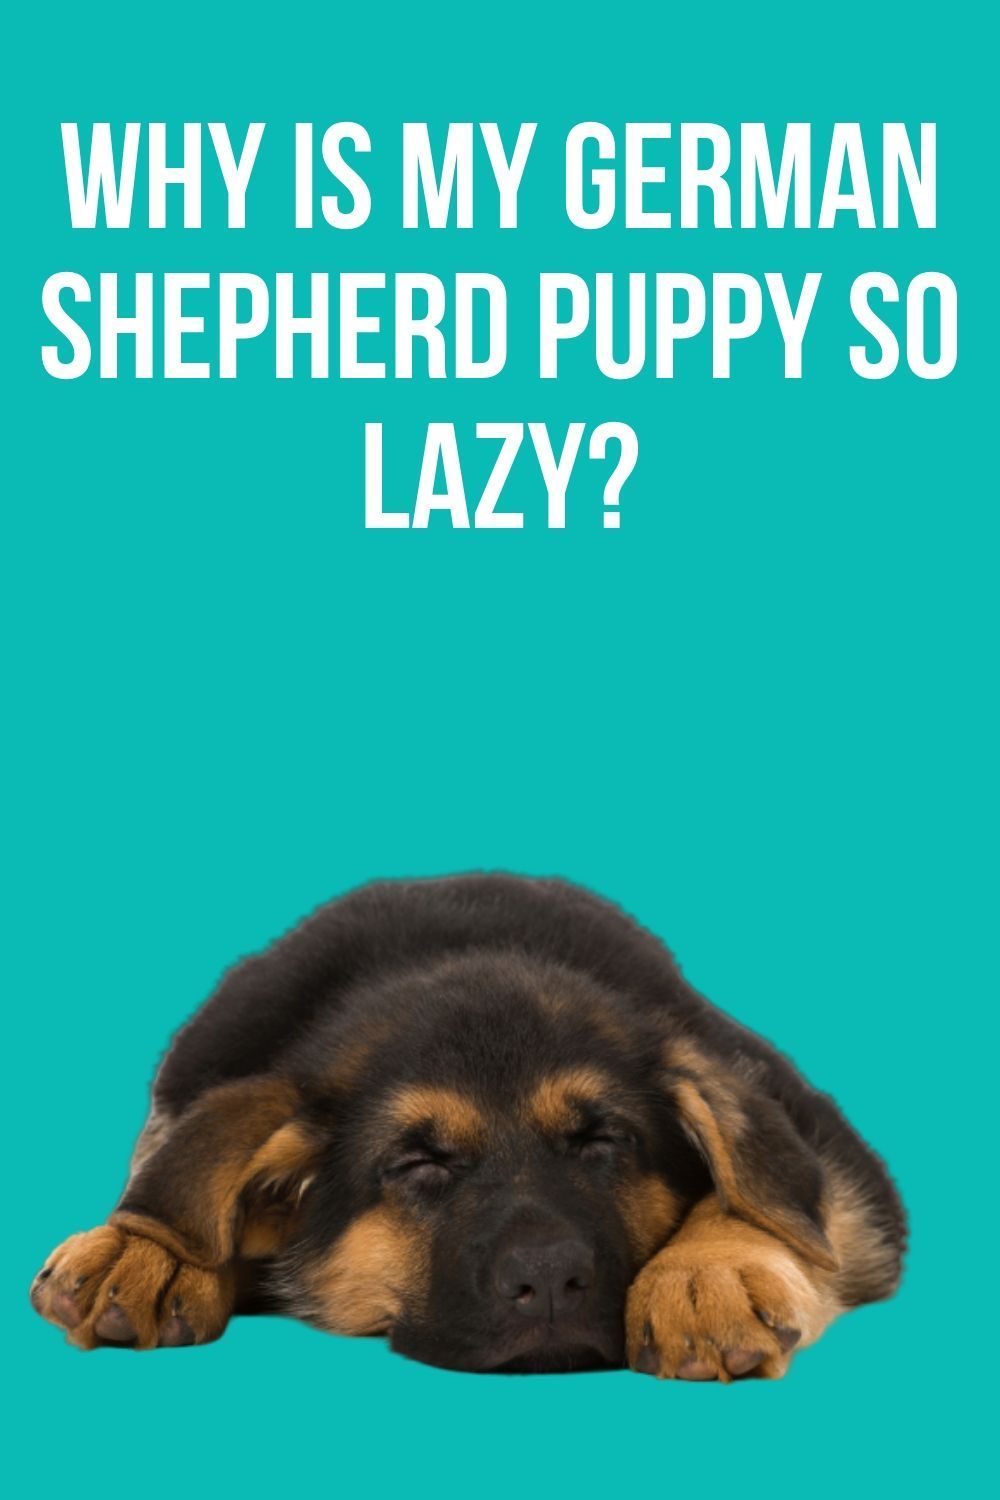 Why is my German Shepherd so lazy?